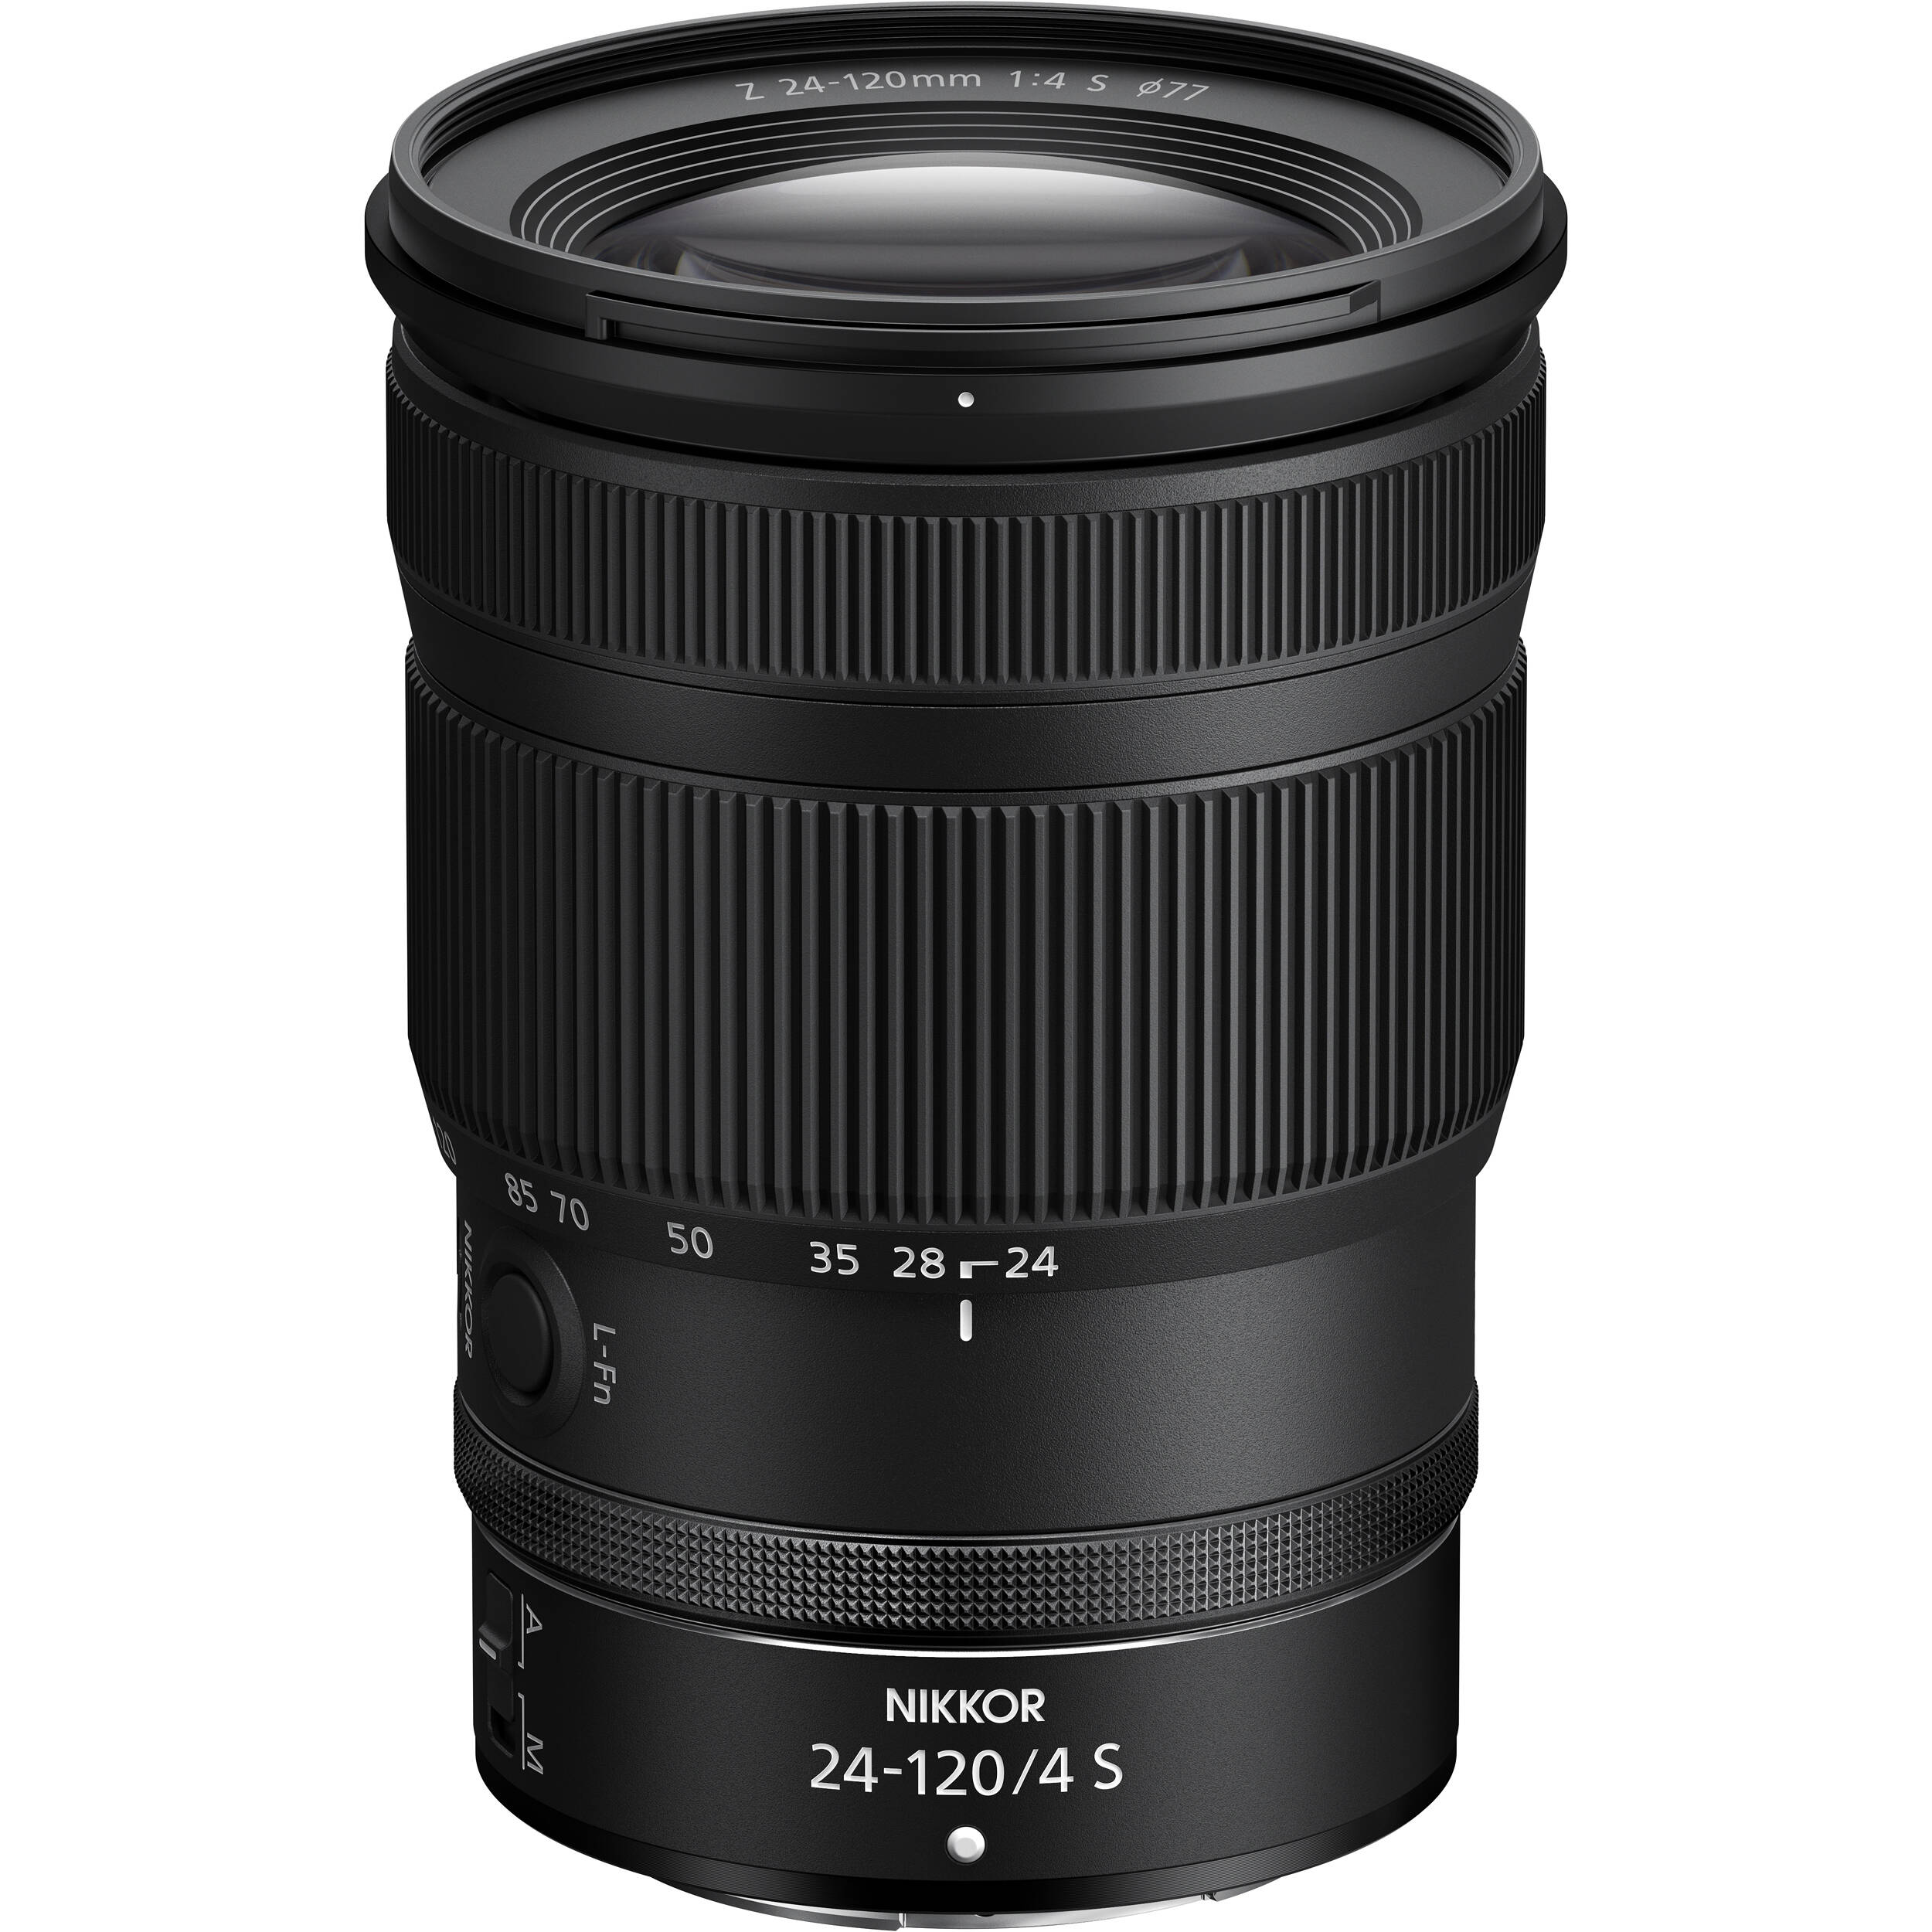 Thiết kế của ống kính Nikon Z 24-120mm f/4 S có khả năng chống chịu thời tiết